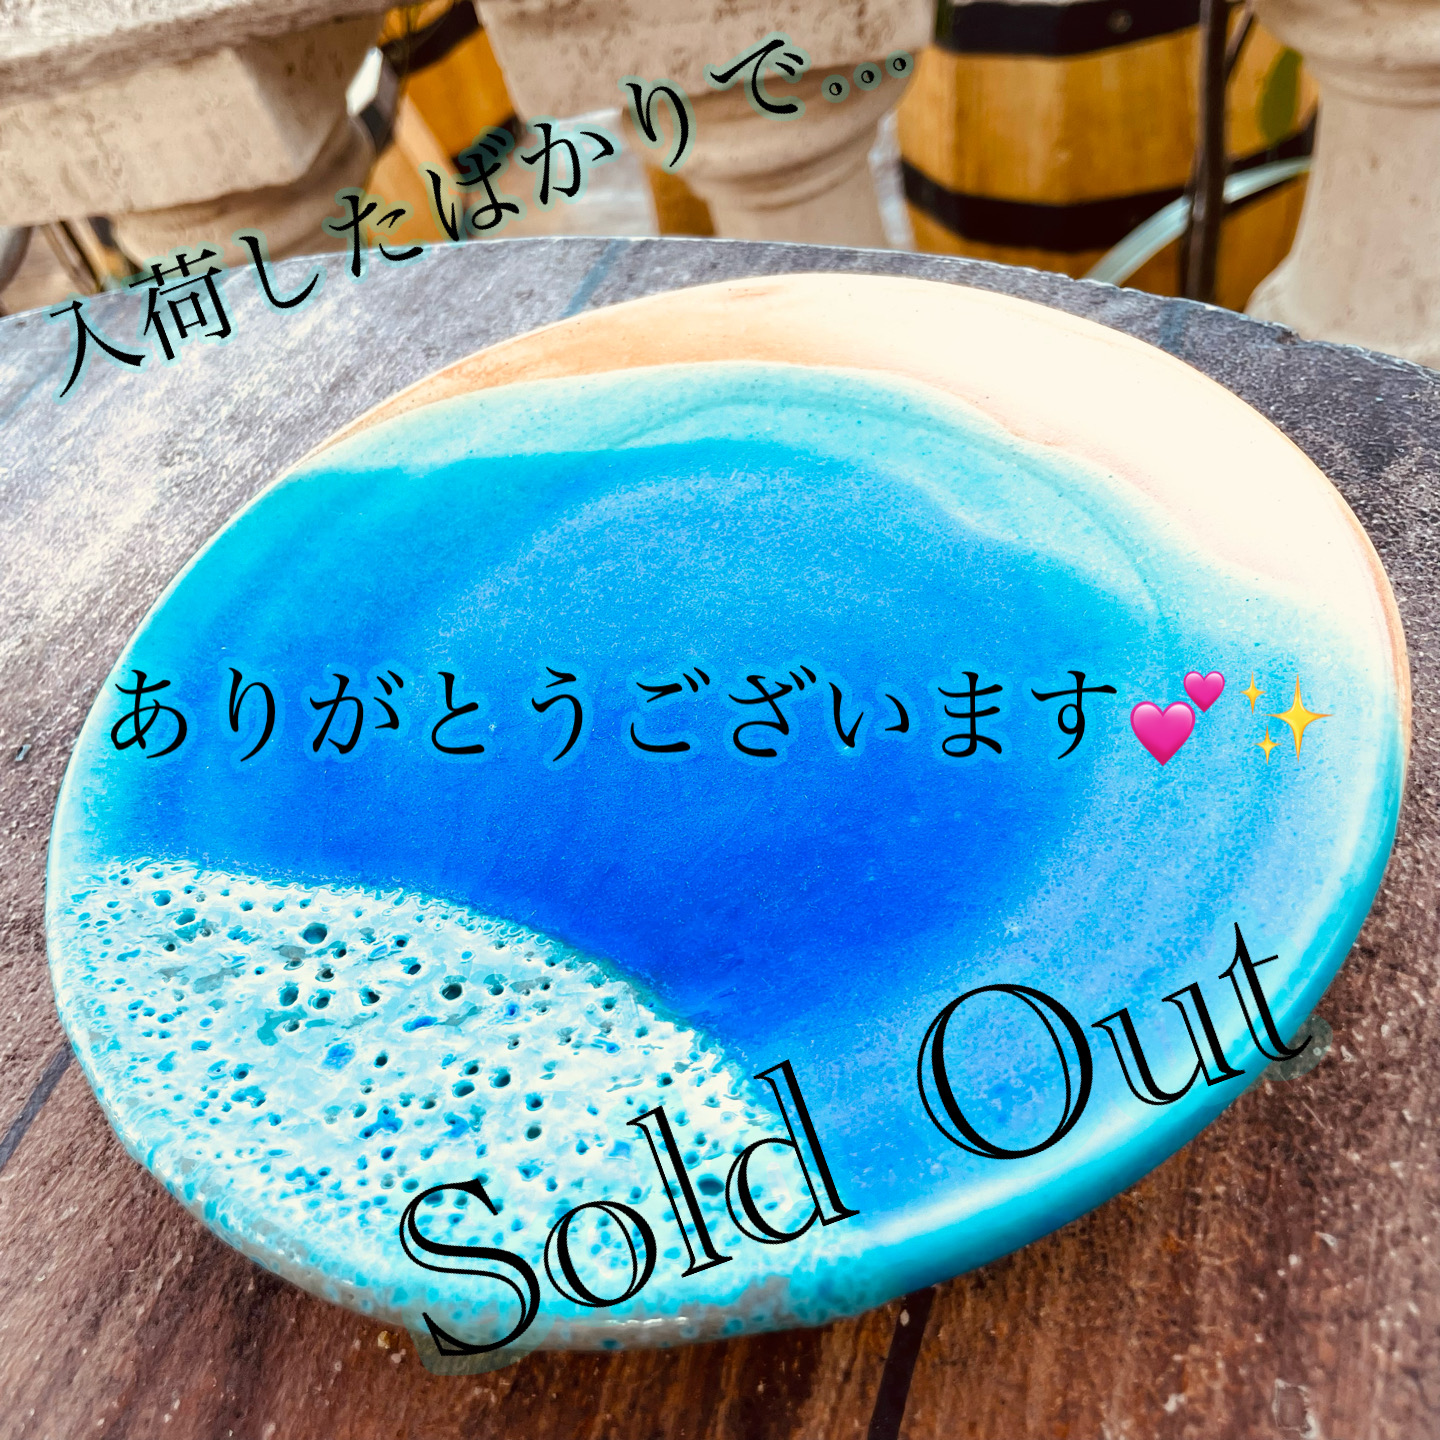 うるまブルーのお皿、ご購入ありがとうございます。